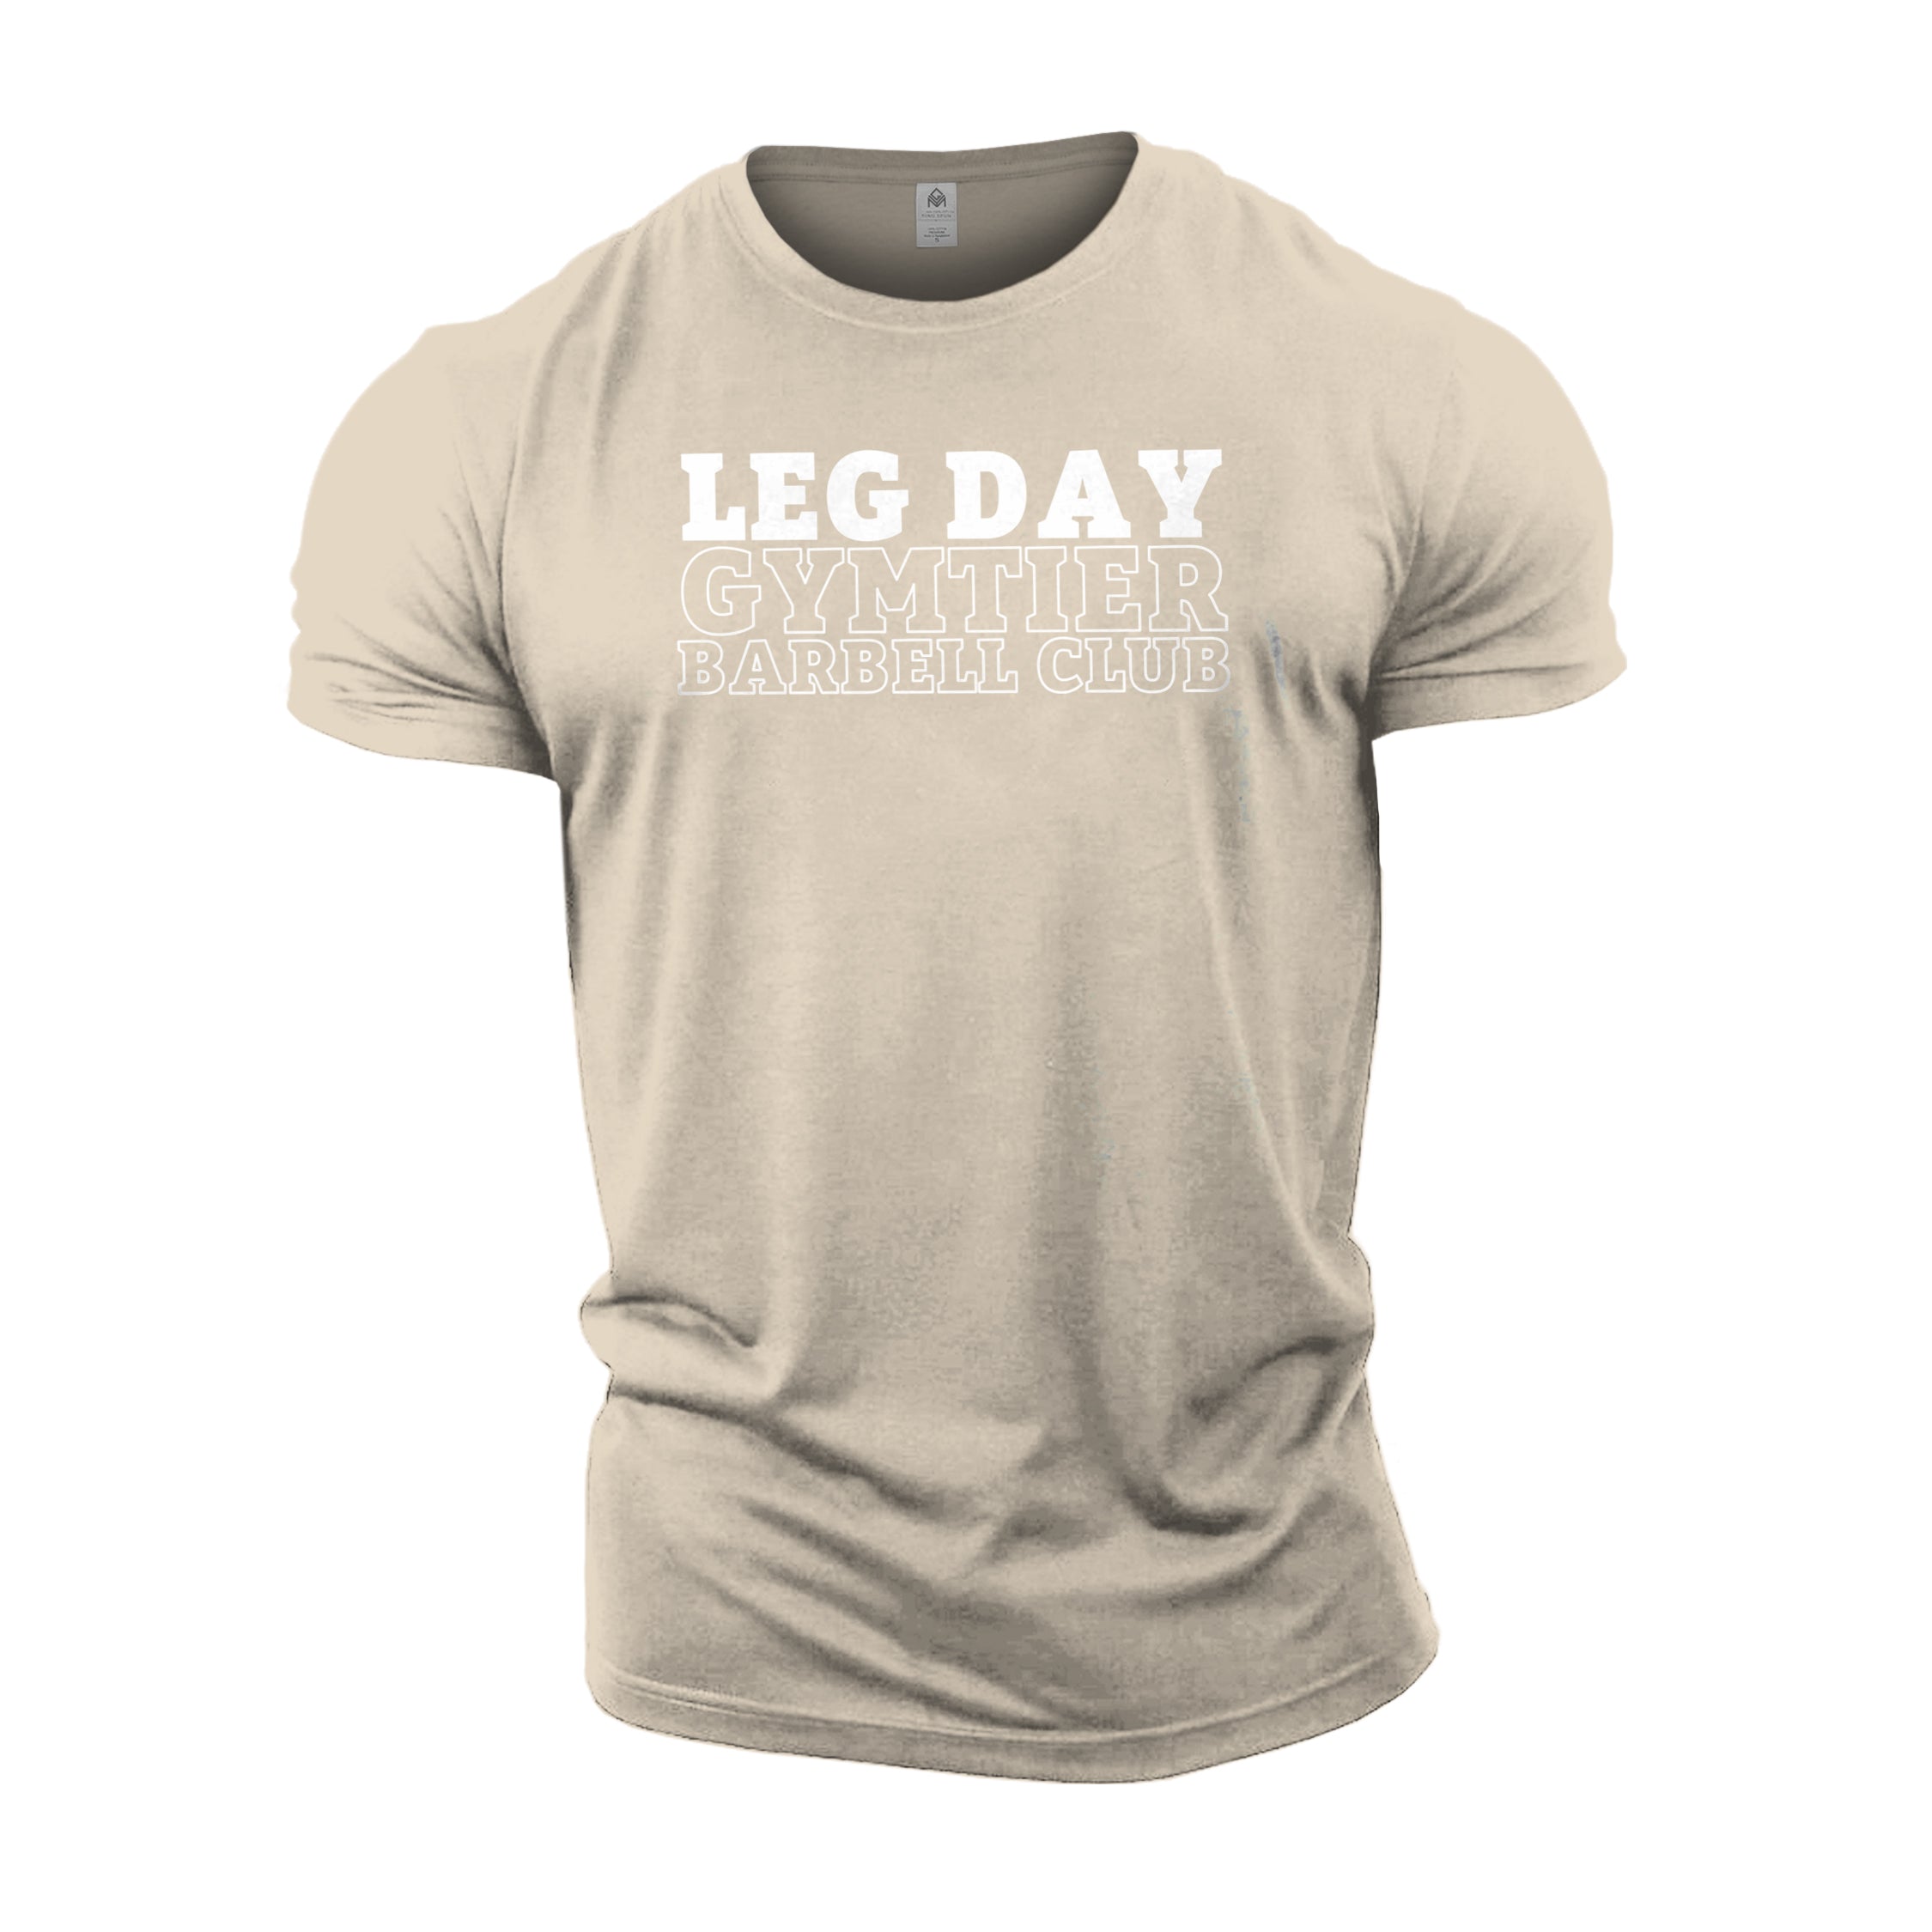 Gymtier Barbell Club - Leg Day - Gym T-Shirt